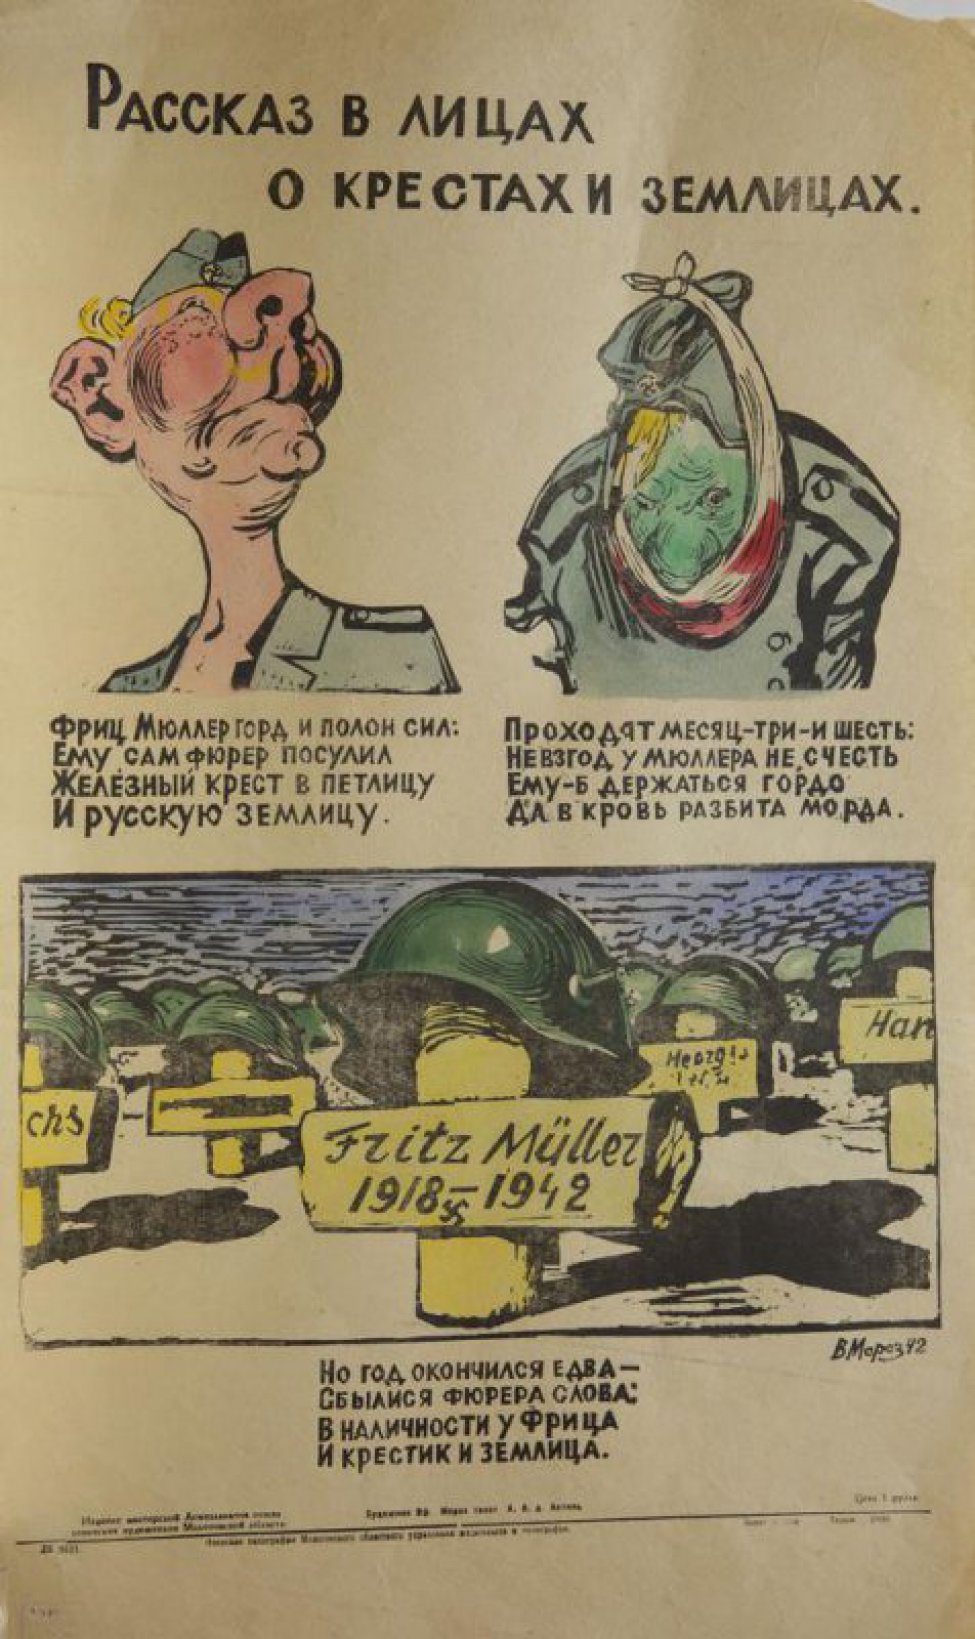 Изображен на первом рисунке фриц Мюллер с гордым видом, на втором-голова с повязкой, на третьем голова в каске с надписью:" Fpitz Muller 1918-1942г. Под каждым рисунком текст:" фриц... землица".